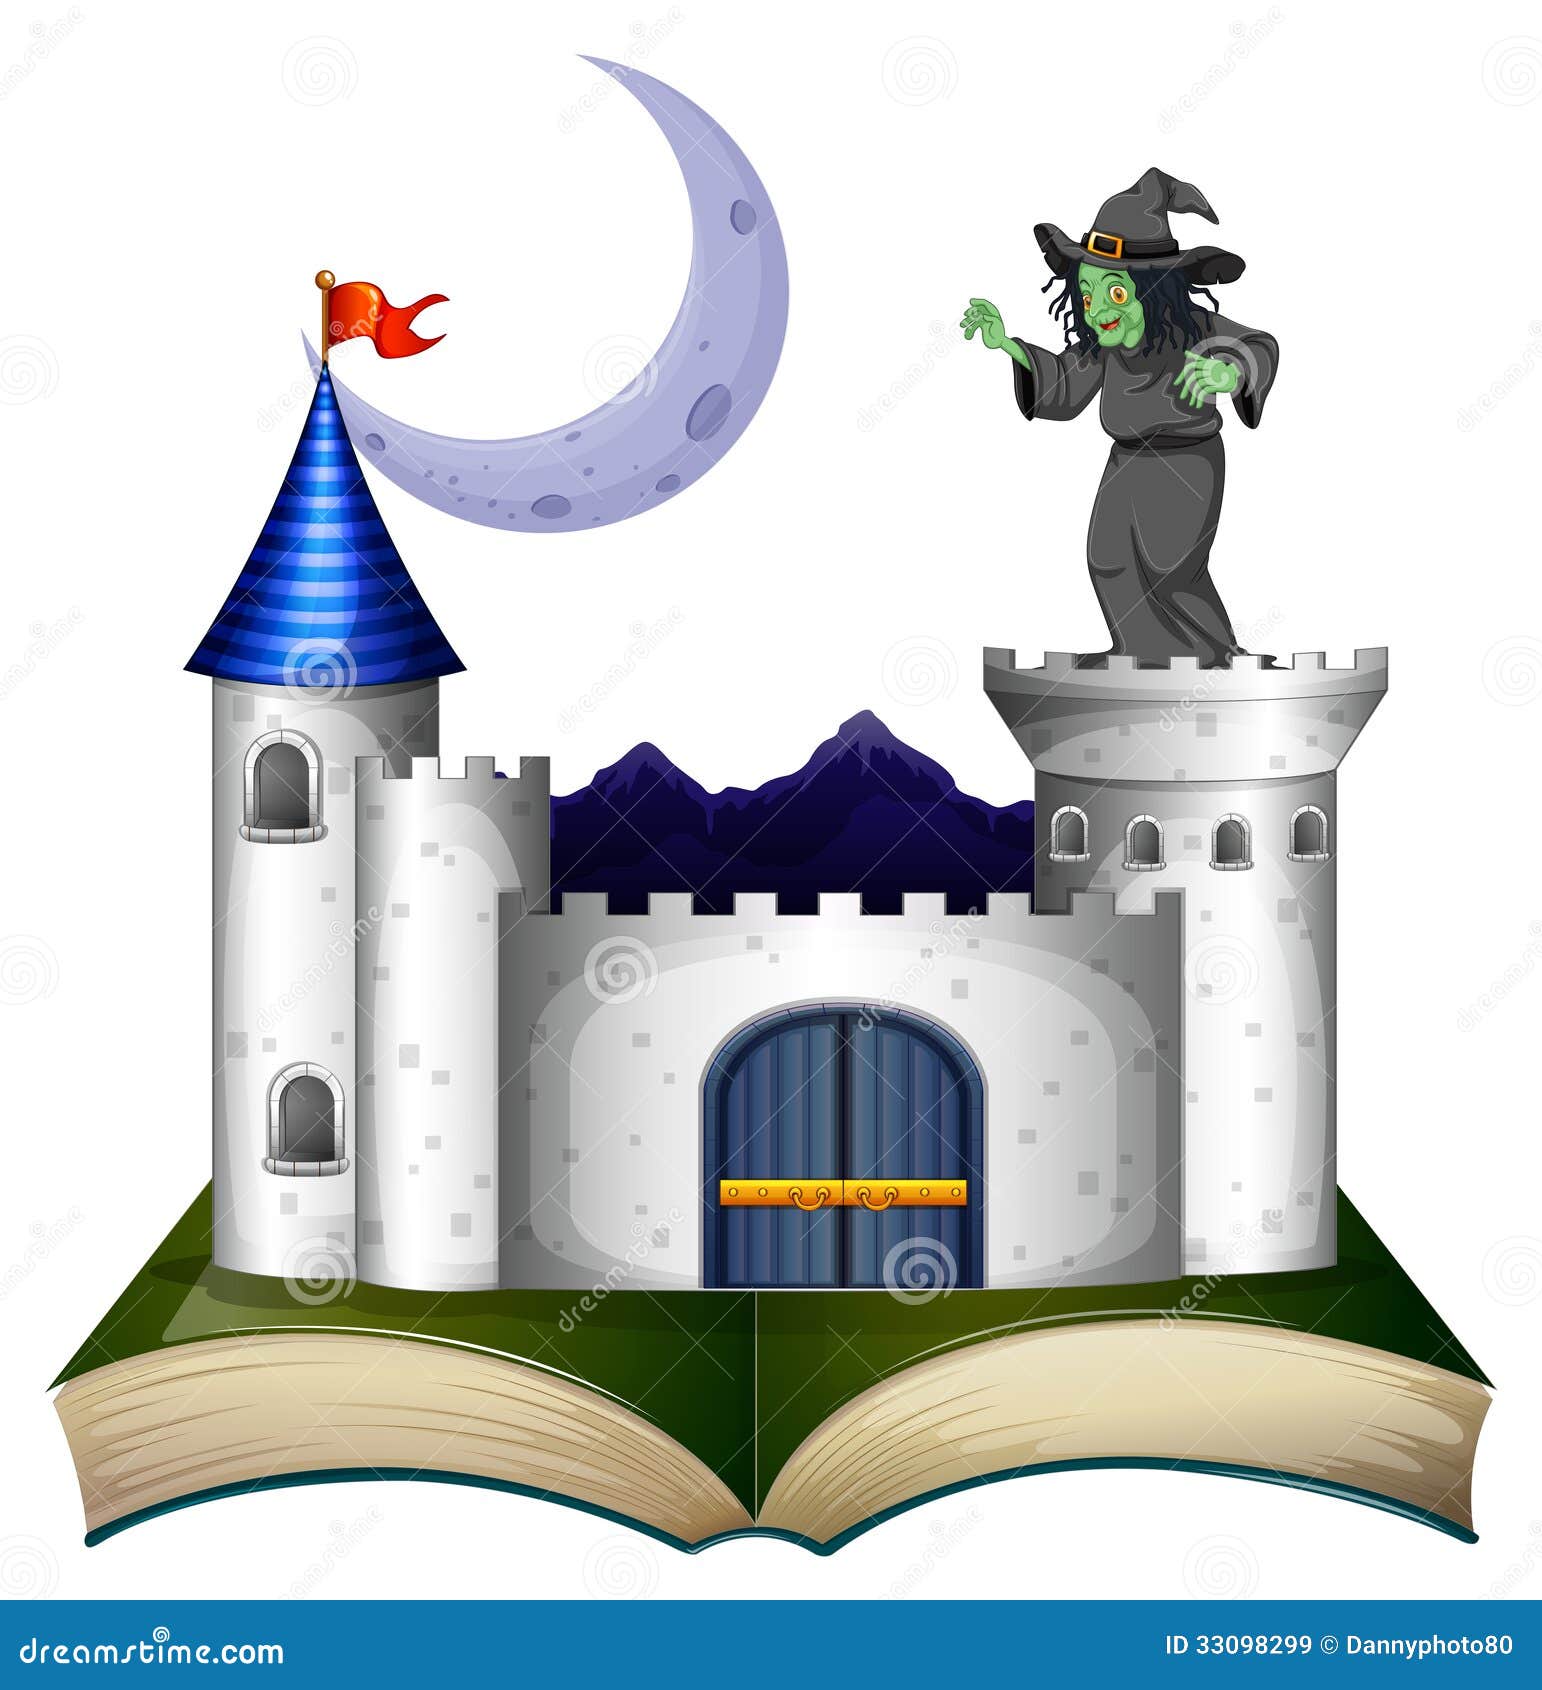 背景上孤立的手繪萬聖節城堡插圖, 假期, 巫婆, 城堡向量圖案素材免費下載，PNG，EPS和AI素材下載 - Pngtree